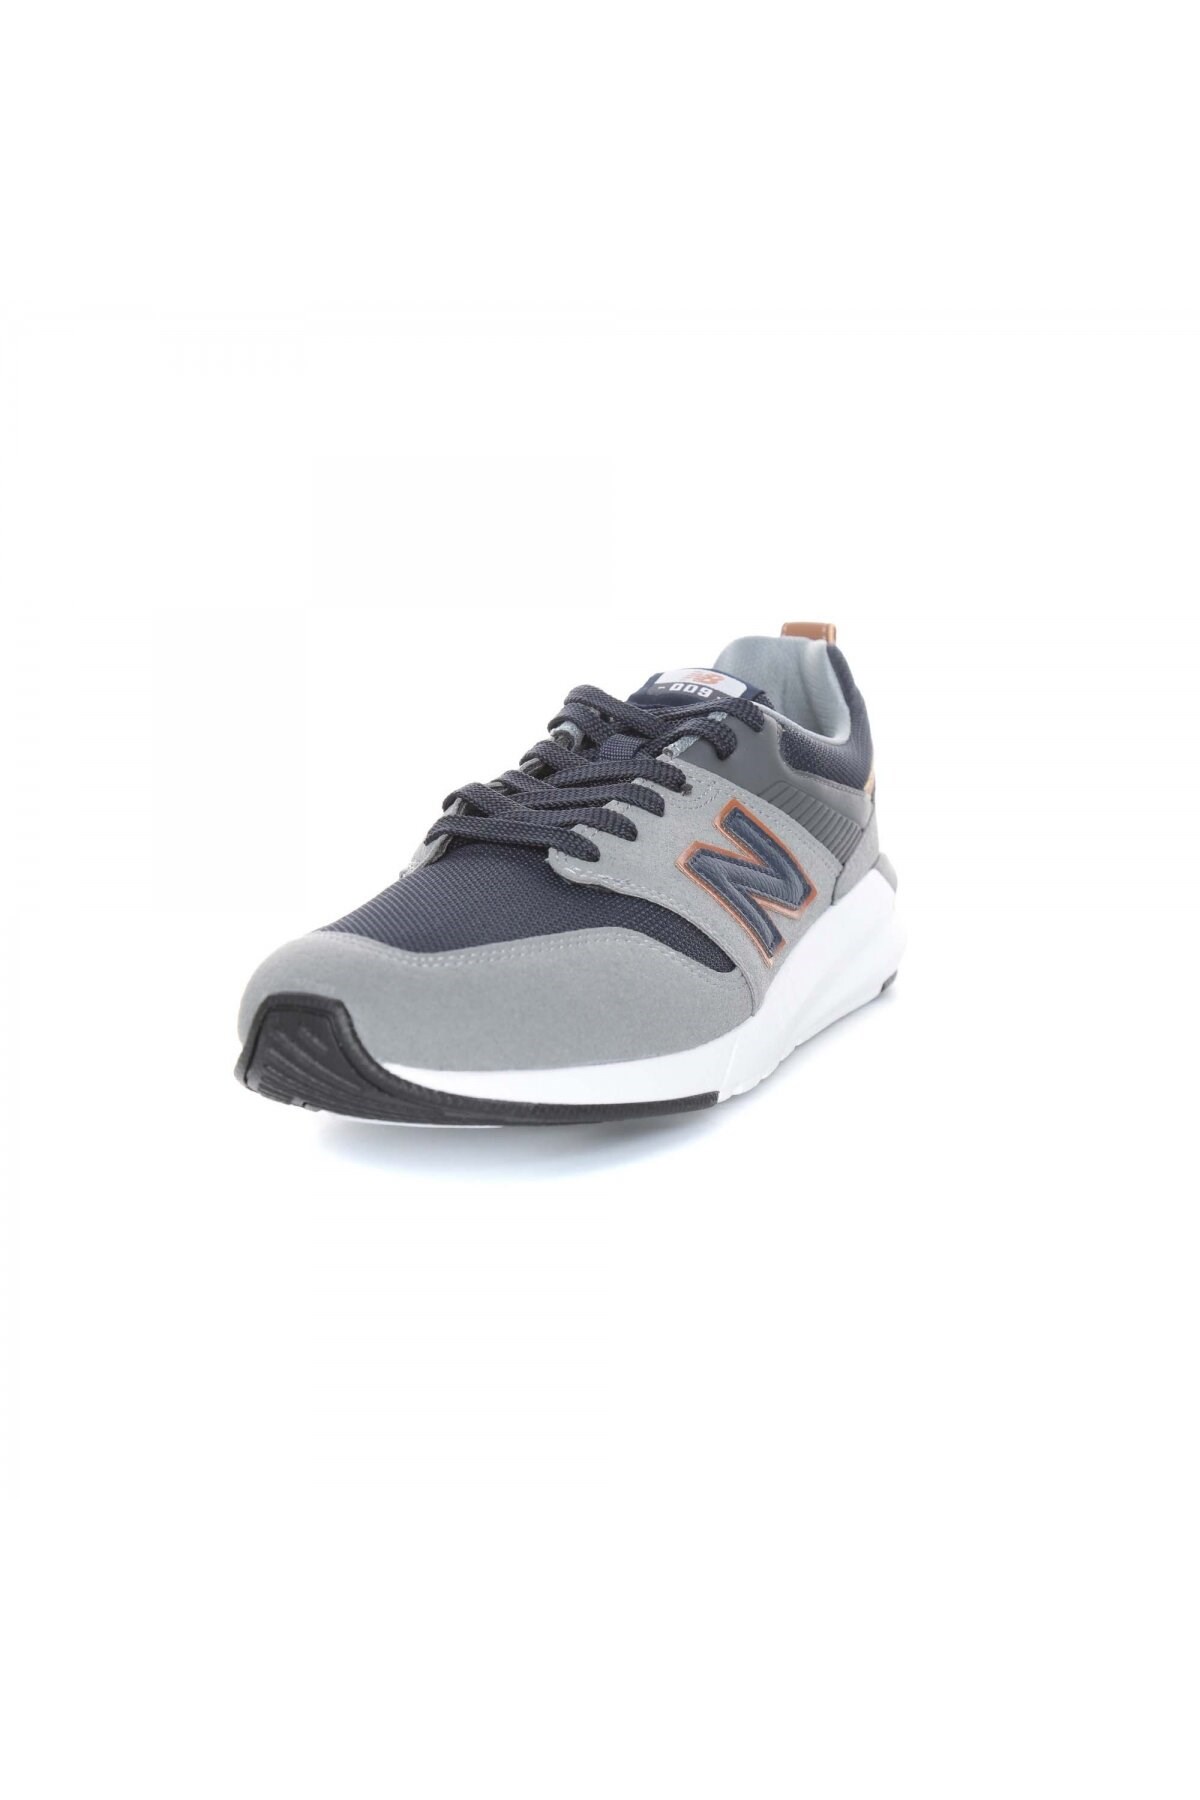 New Balance Erkek Ayakkabı MS009GNS Grey